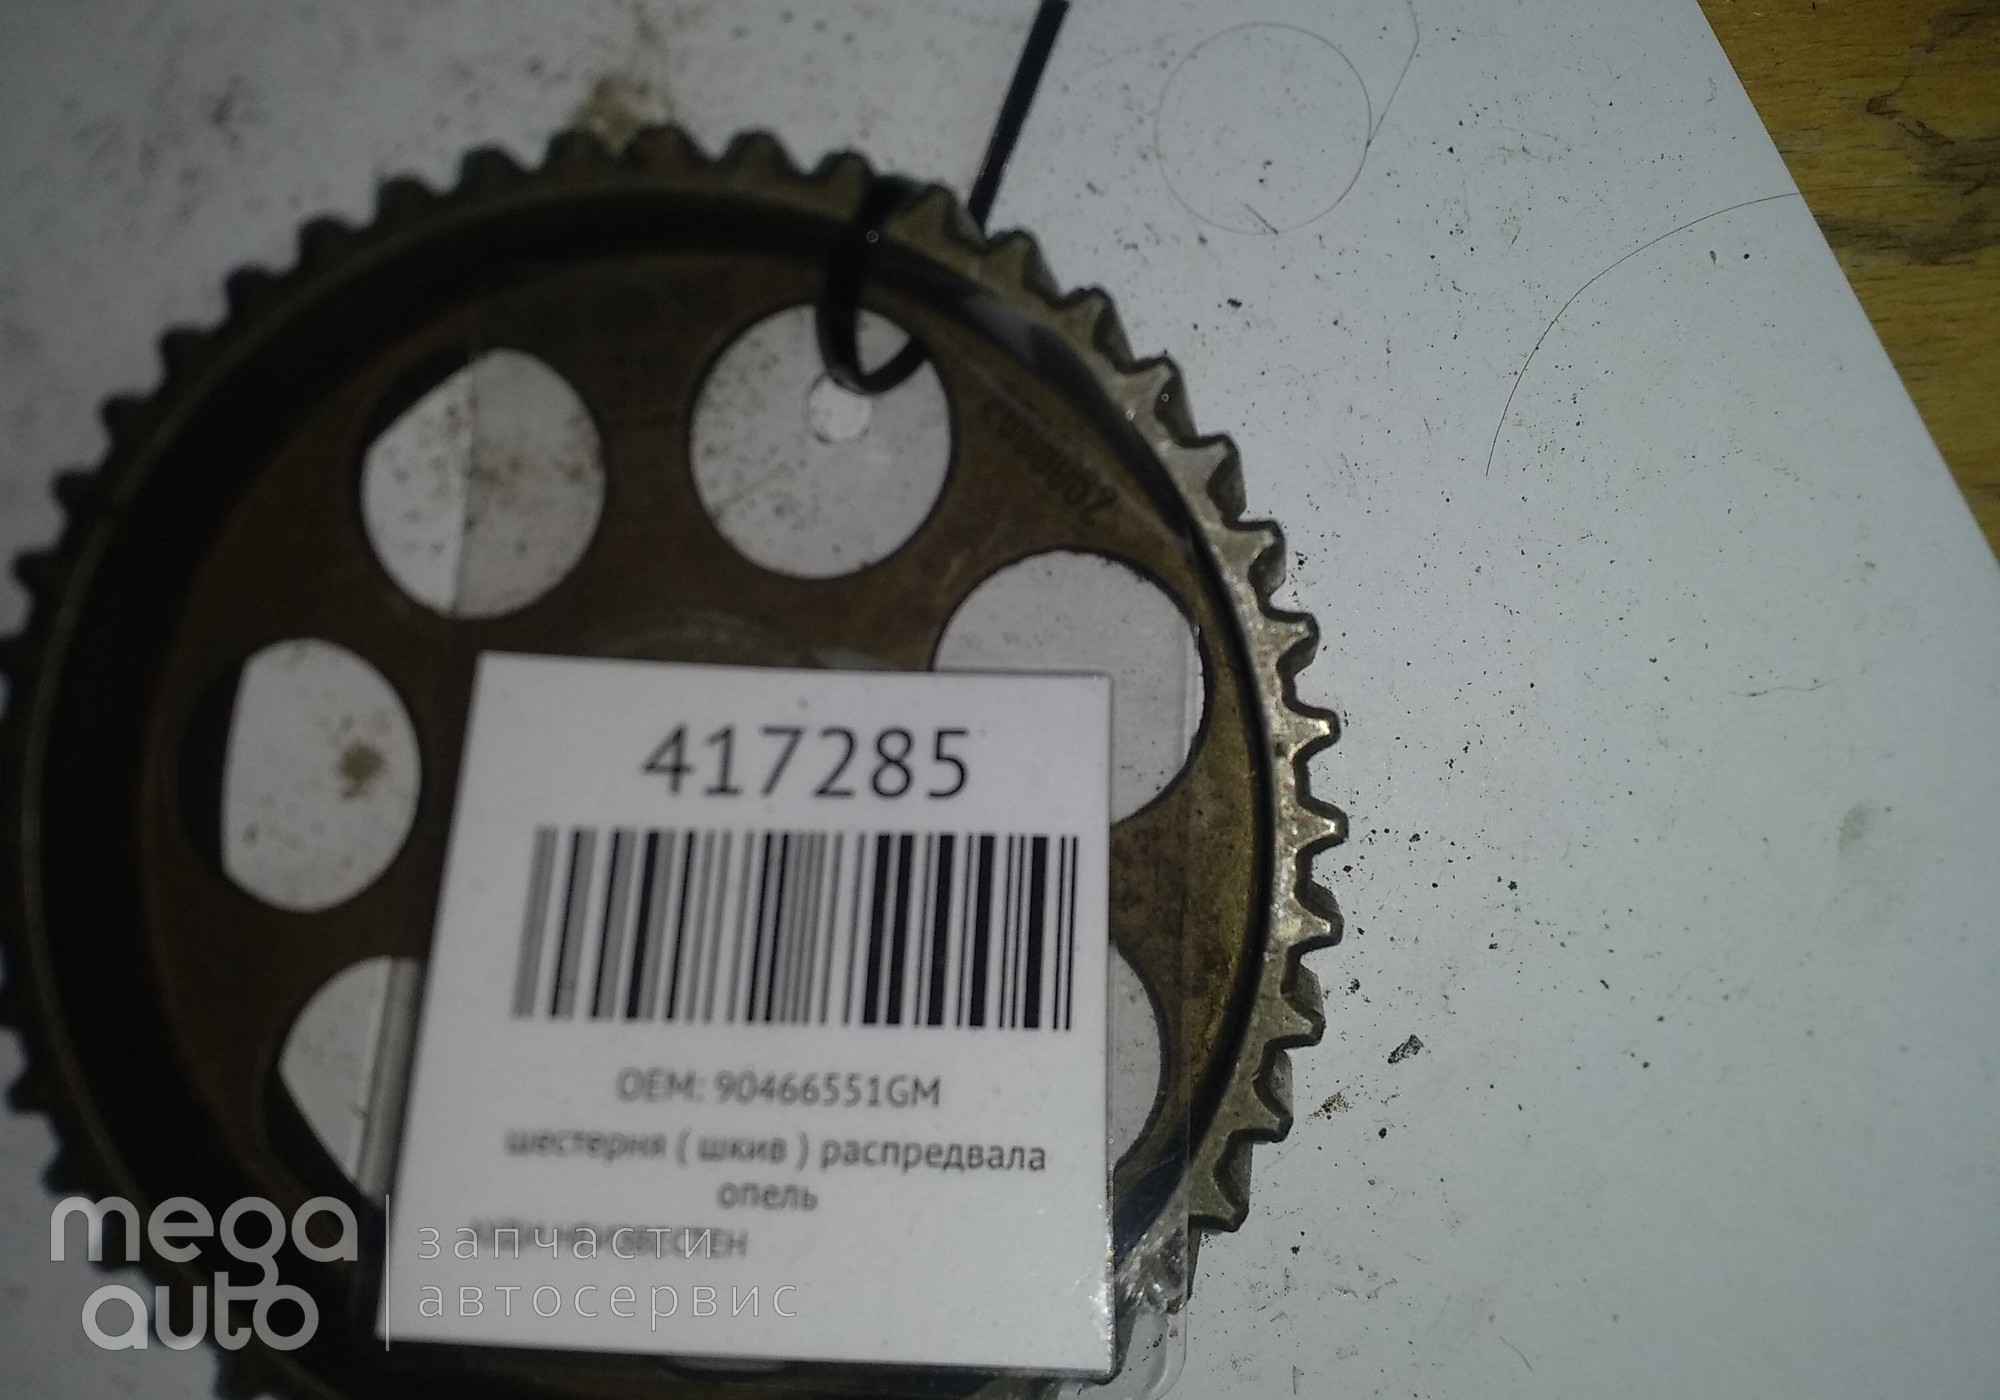 90466551GM шестерня ( шкив ) распредвала опель для Audi Неопознанная модель